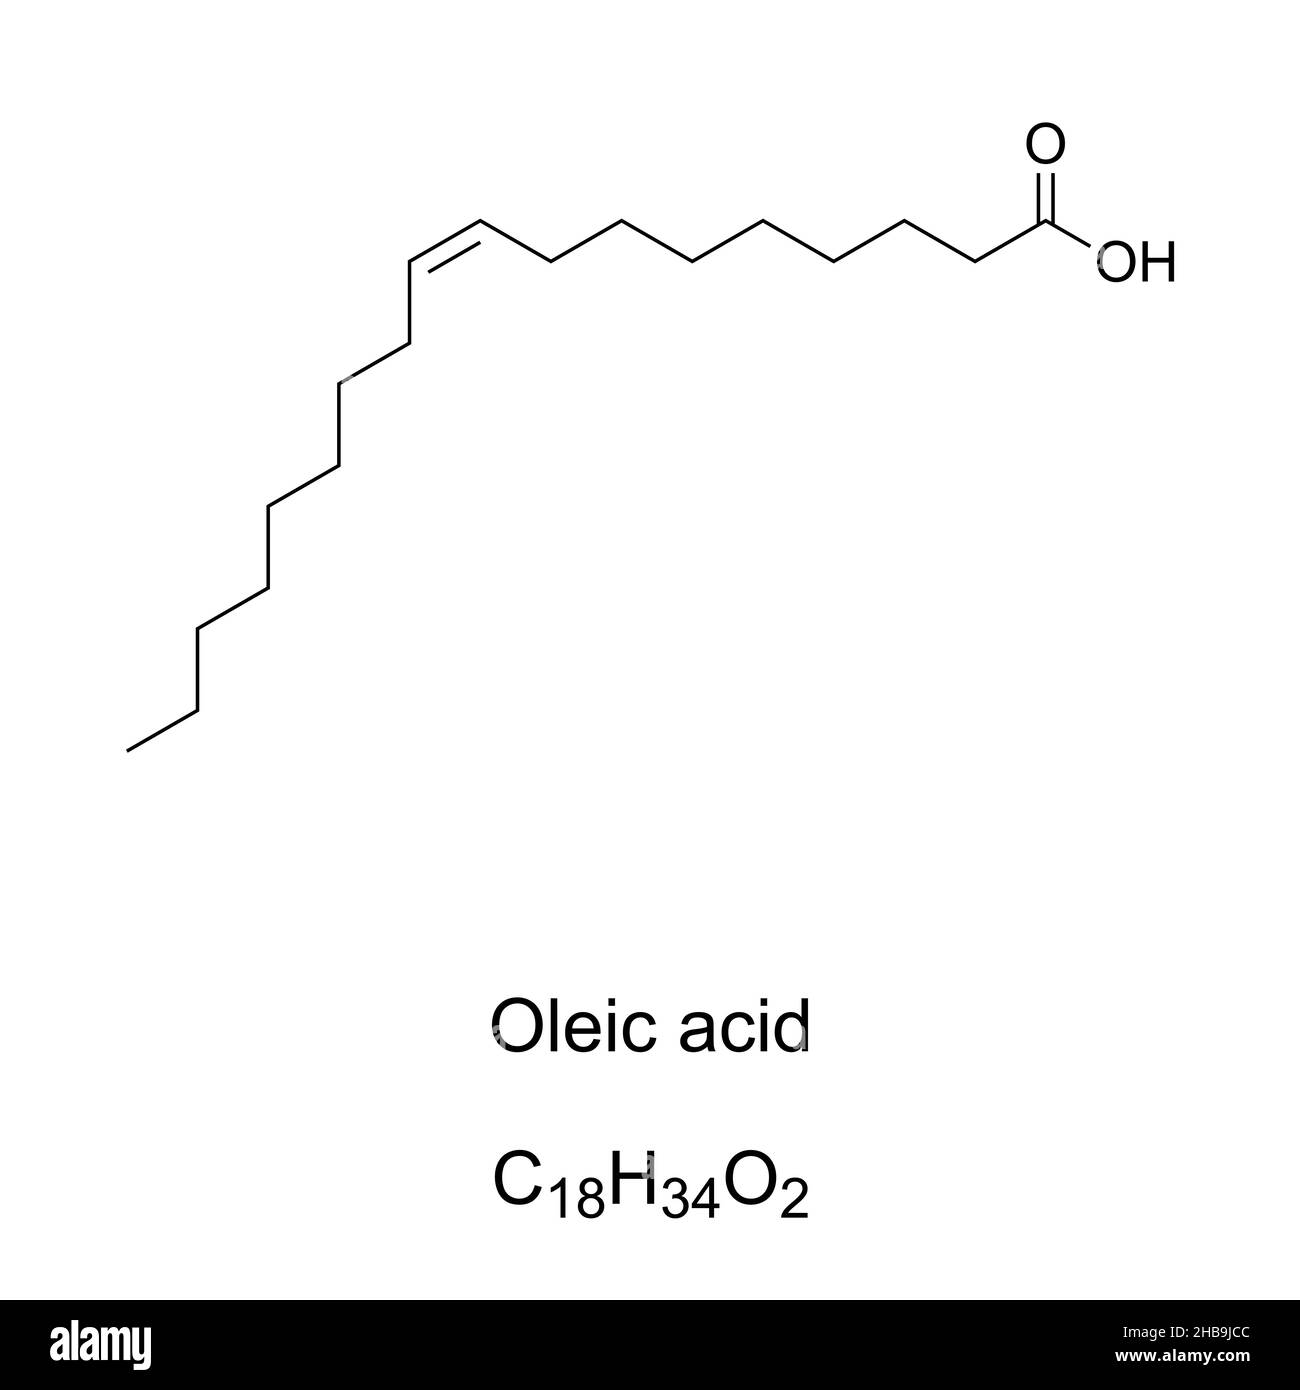 Fórmula y estructura química del ácido oleico. El ácido graso omega-9 monoinsaturado, el ácido graso más común en la naturaleza, se presenta en las grasas animales y vegetales. Foto de stock